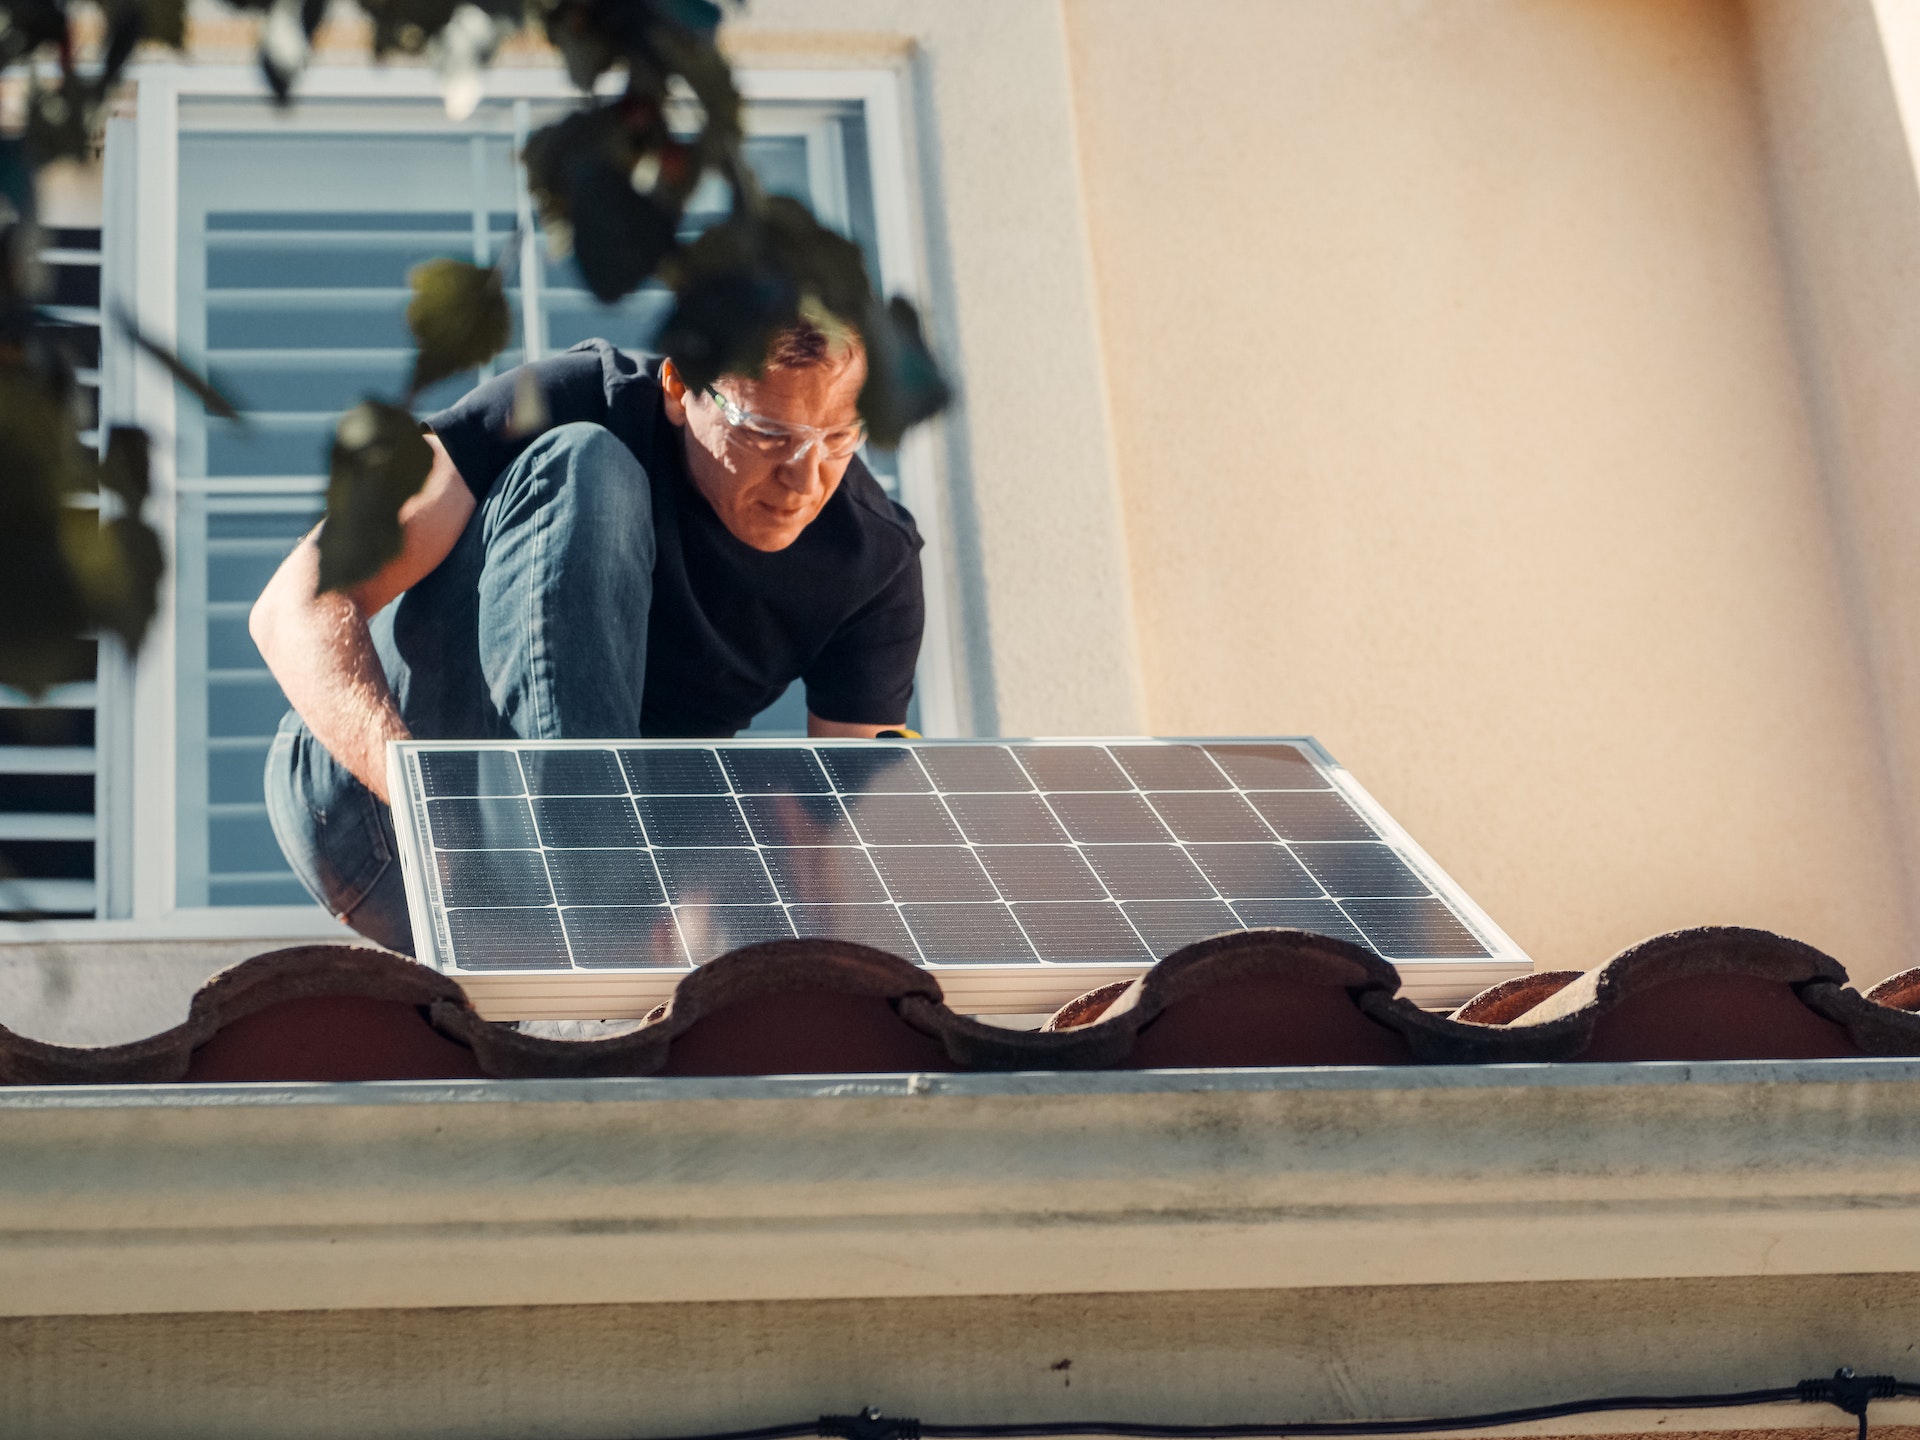 A partir de que en 2018 el gobierno israelí autorizó reformas al sector eléctrico, el mercado se abrió a la competencia y aparecieron compañías como EDI Energy que ofrecen soluciones de energía solar accesibles para la población general. Foto: Kindel Media/Pexels.